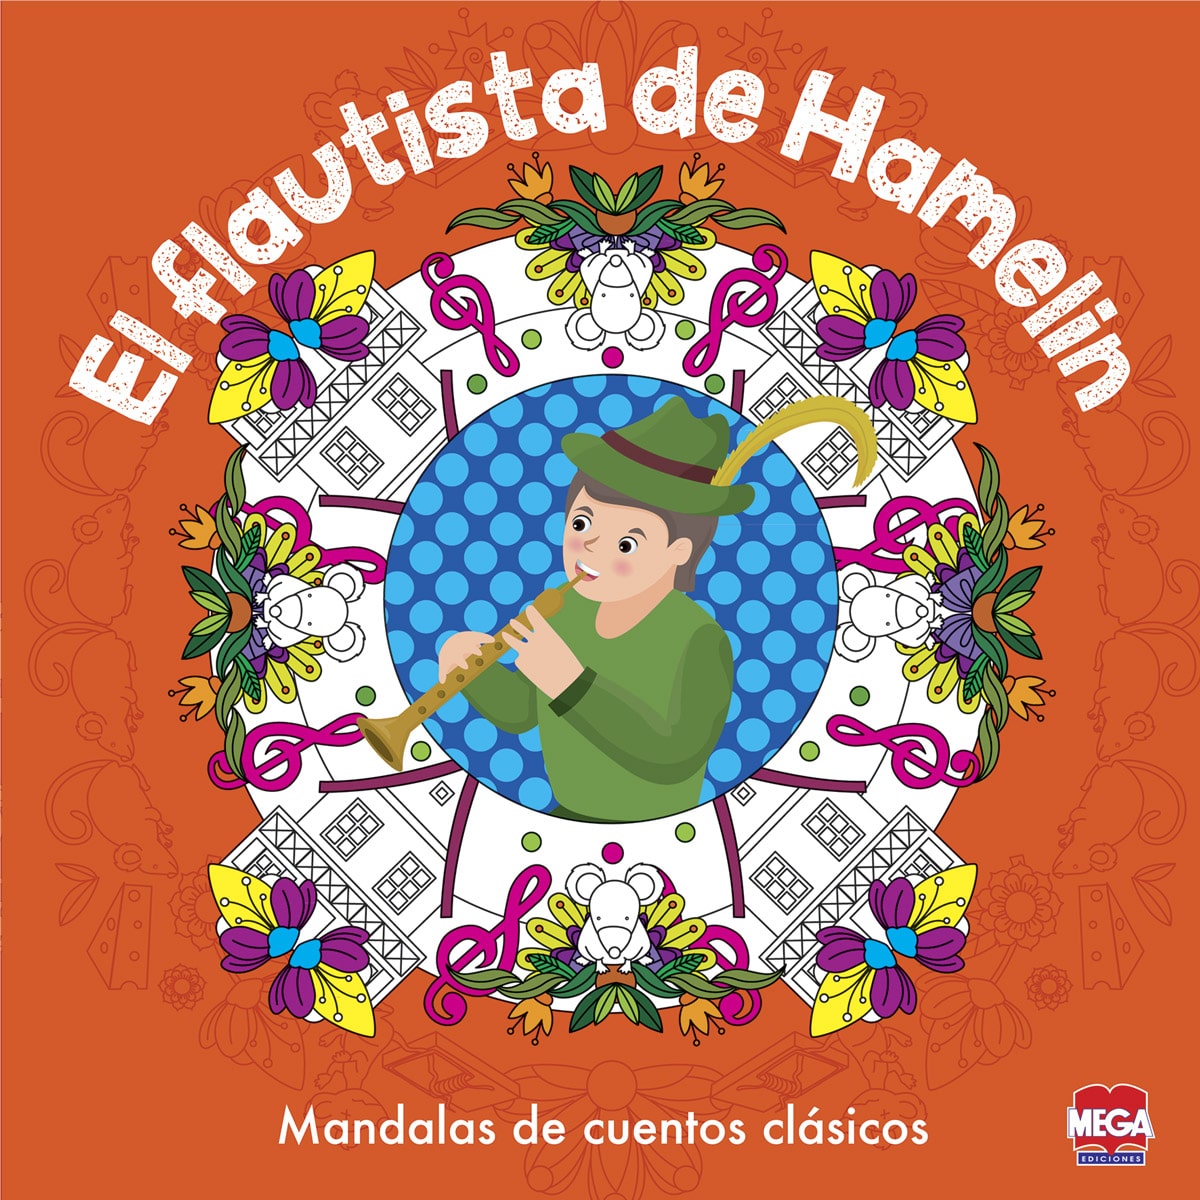 El flautista de Hamelin mandalas de cuentos clásicos